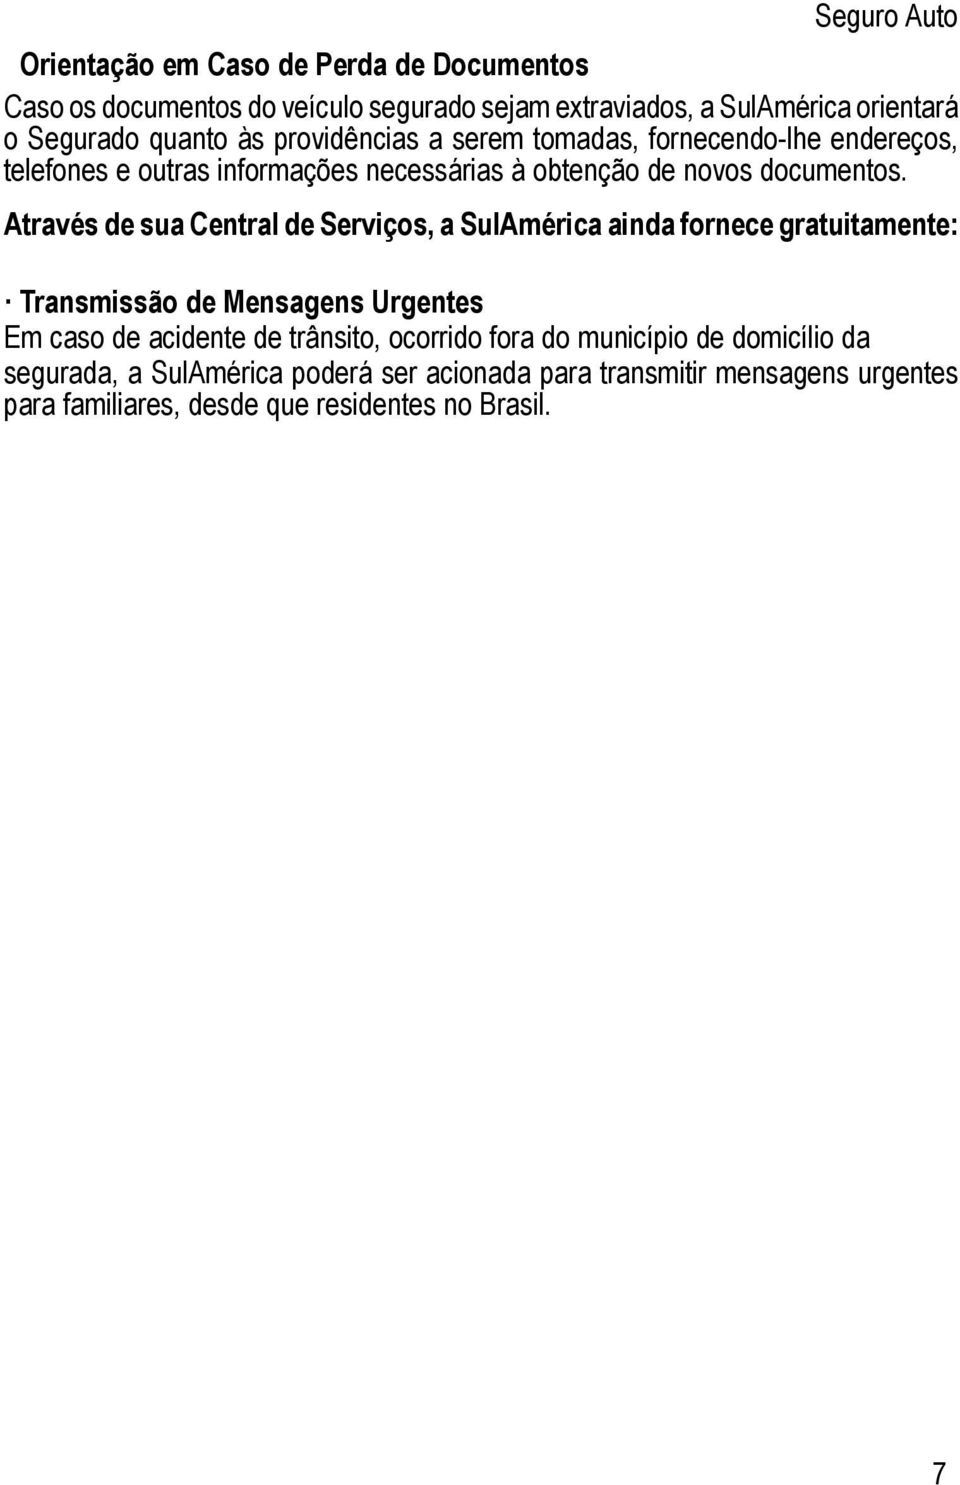 Através de sua Central de Serviços, a SulAmérica ainda fornece gratuitamente: Transmissão de Mensagens Urgentes Em caso de acidente de trânsito,